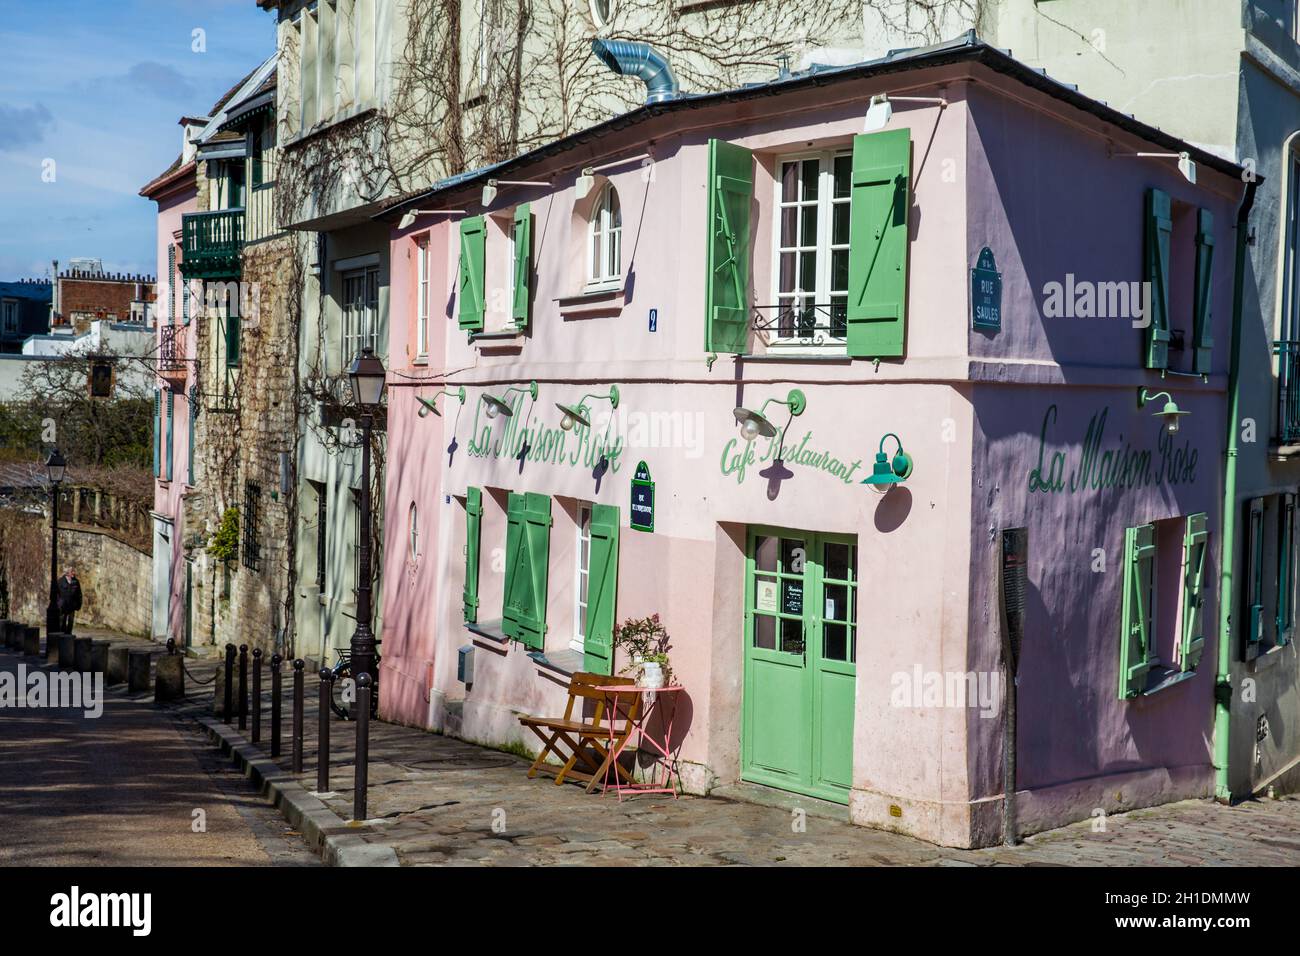 Ristorante Di Casa Rosa Di Parigi Immagini e Fotos Stock - Alamy